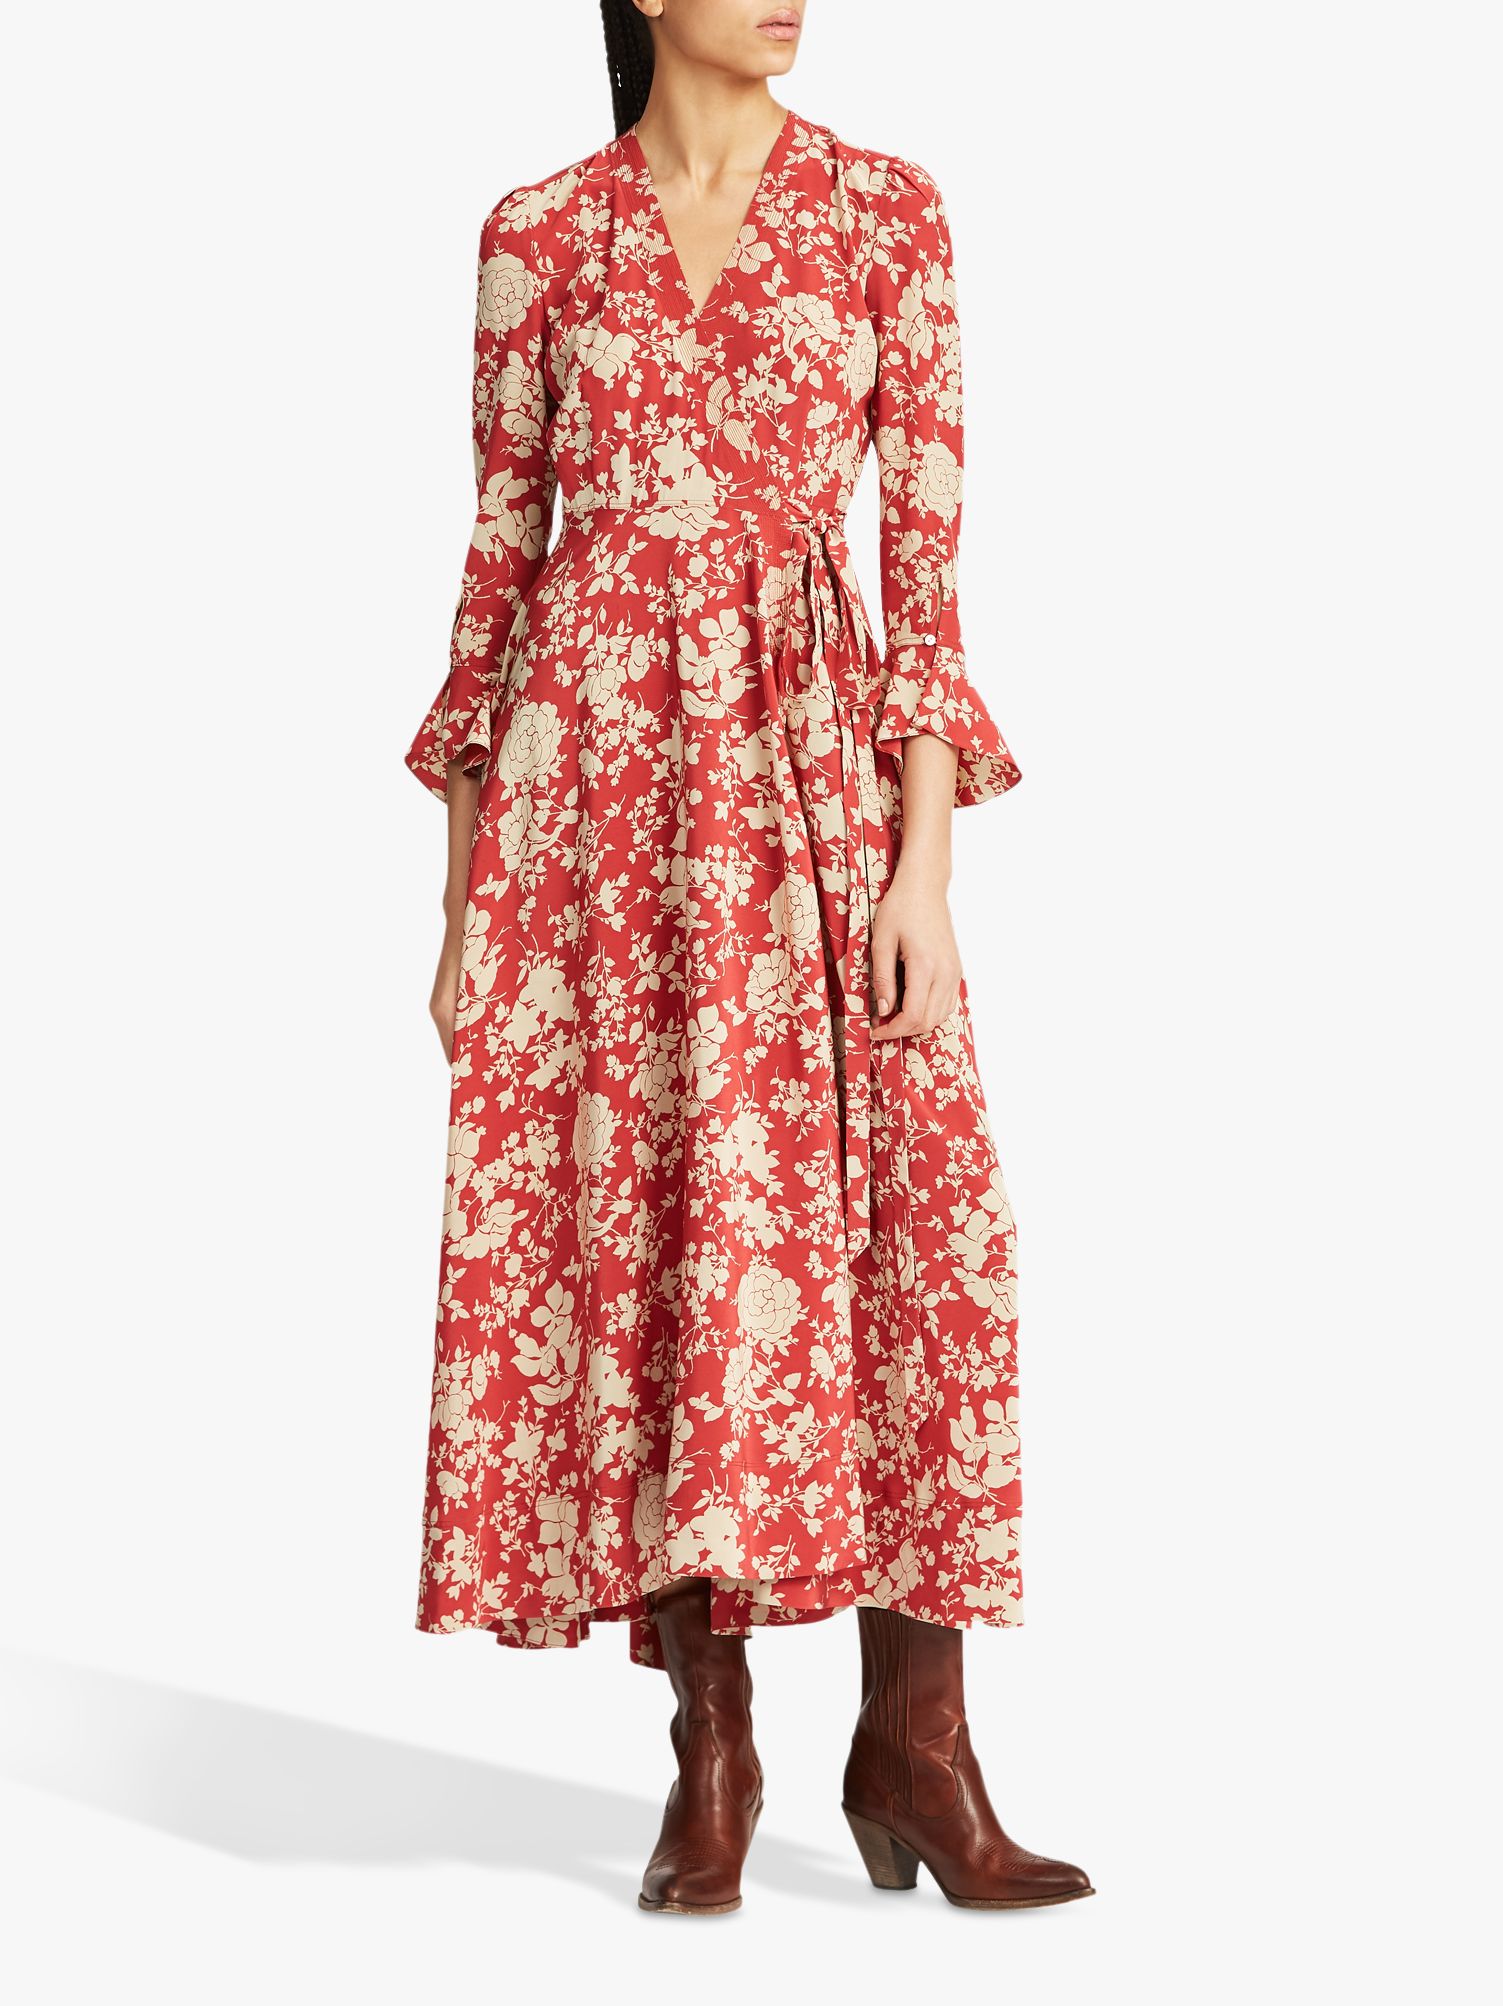 polo ralph lauren floral dress